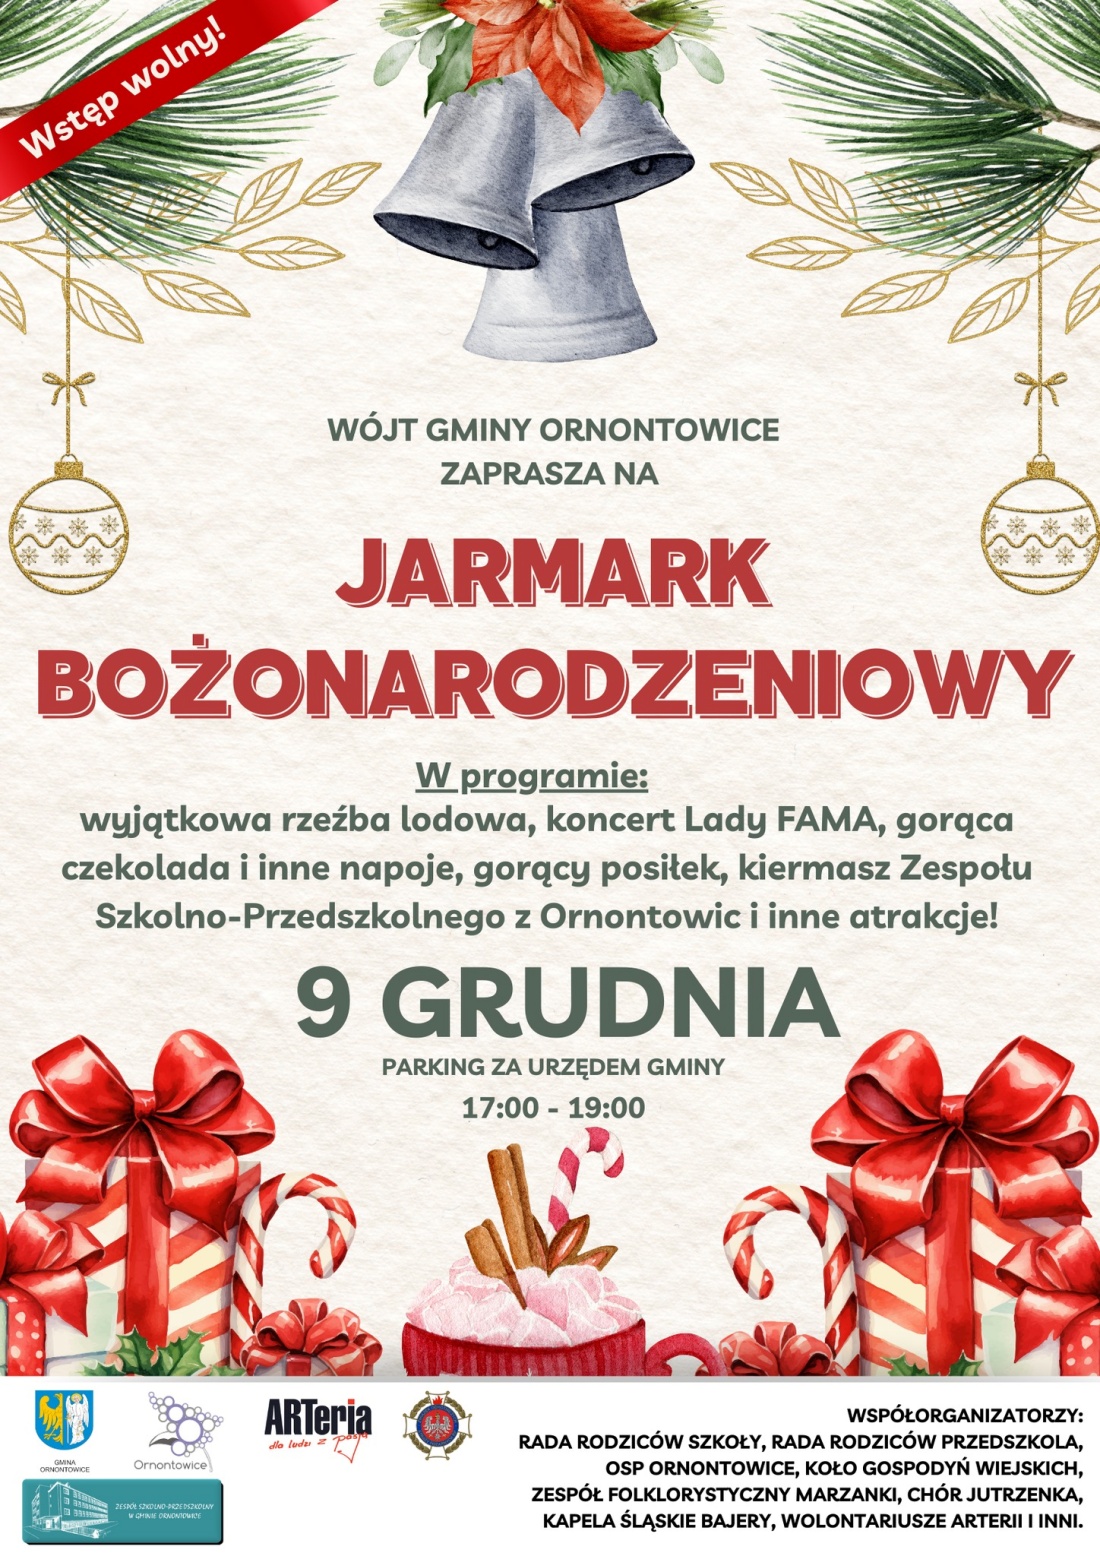 Plakat Urzędu Gminy, zapraszający na Jarmark Bożonarodzeniowy, który odbędzie się 9 grudnia od godziny 17.00 do 19.00 na parkingu za urzędem